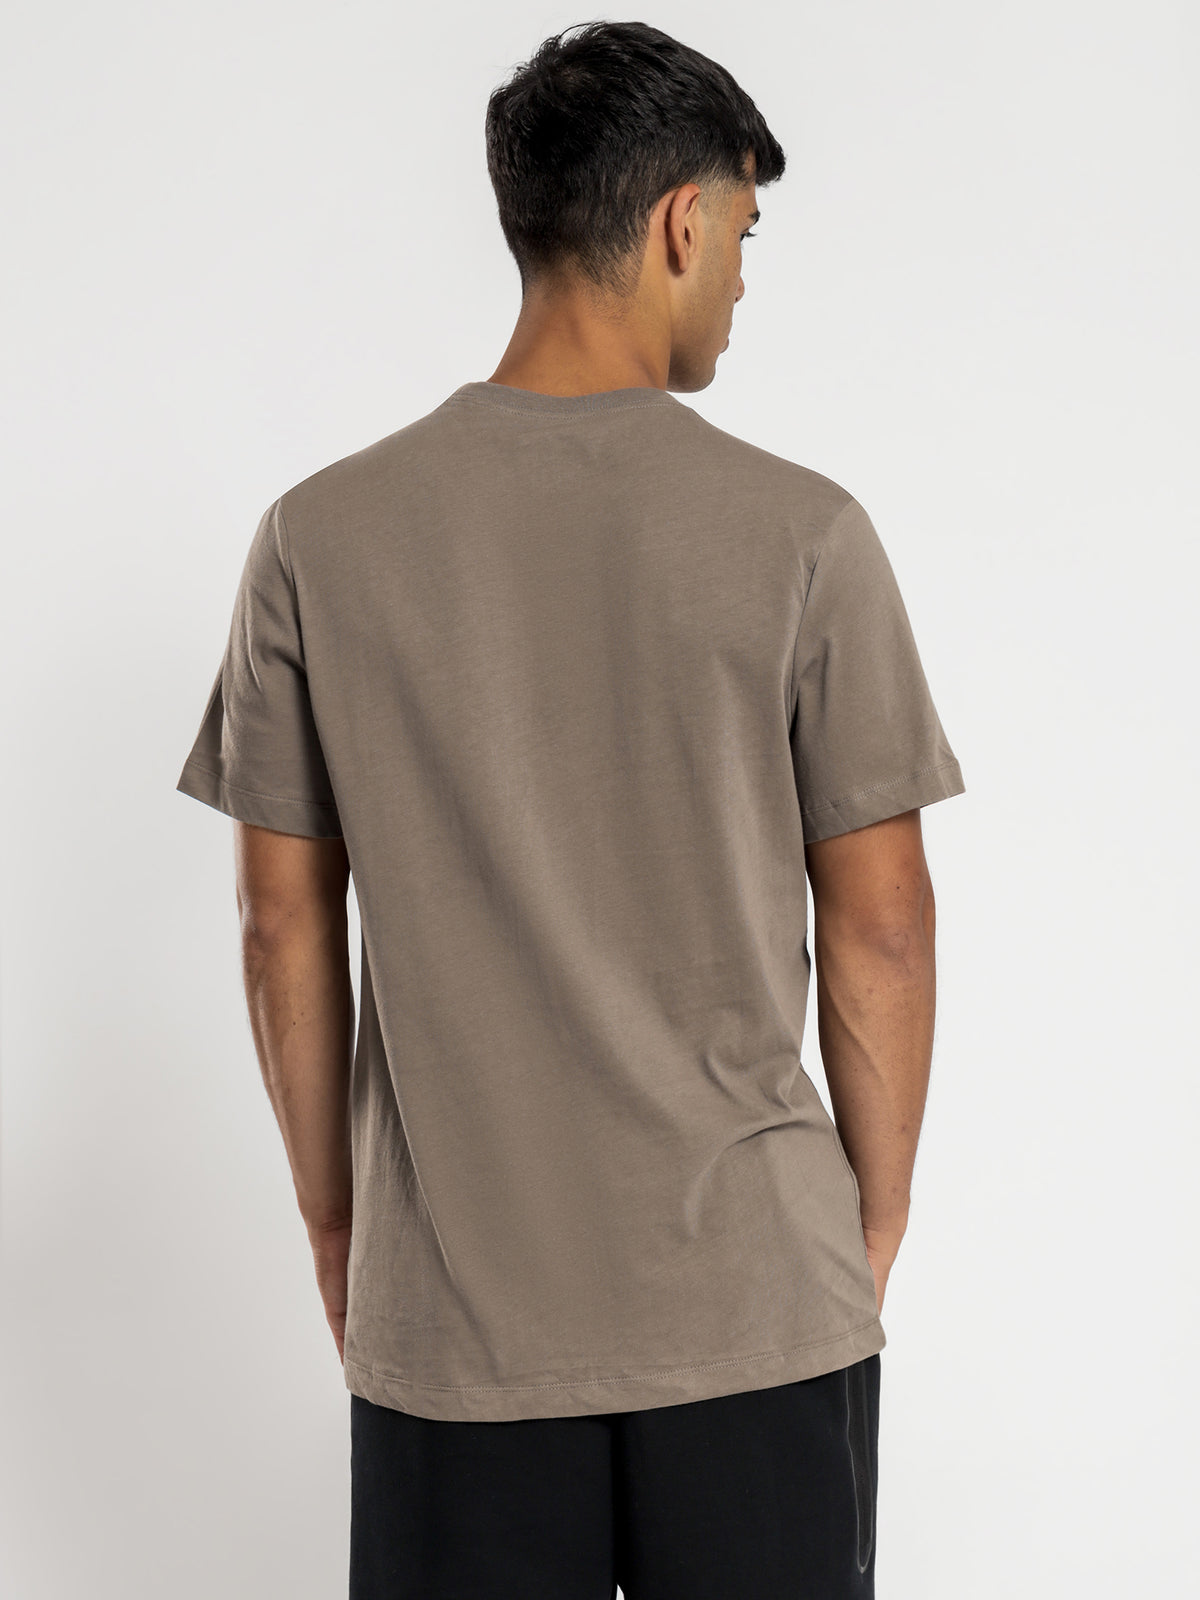 NSW Club T-Shirt in Grey